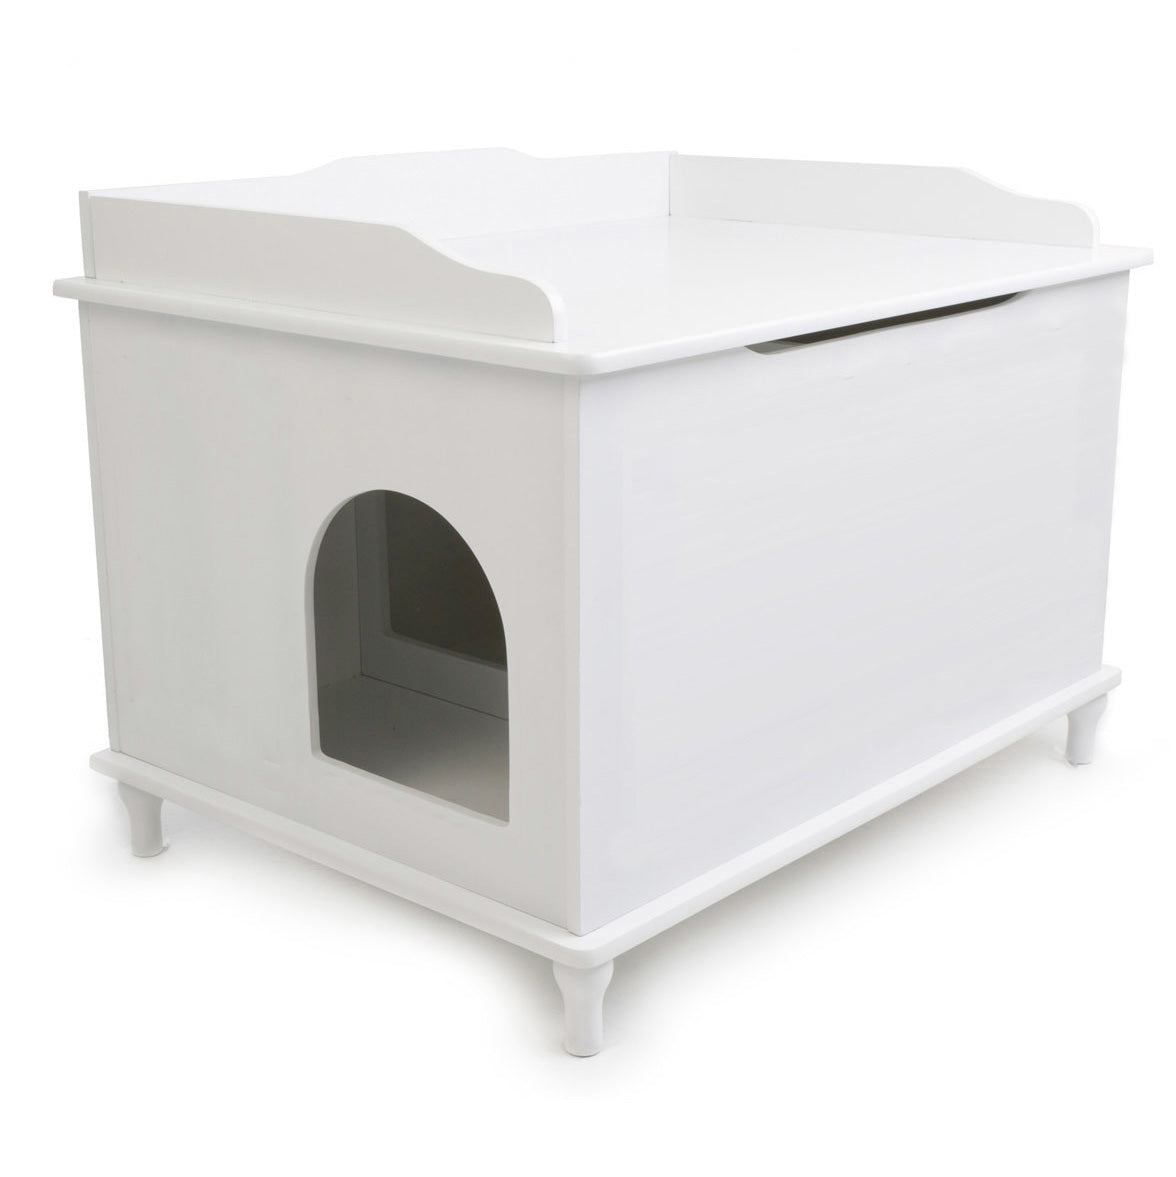 Designer Pet Products The Designer Catbox Litter Box Enclosure in White